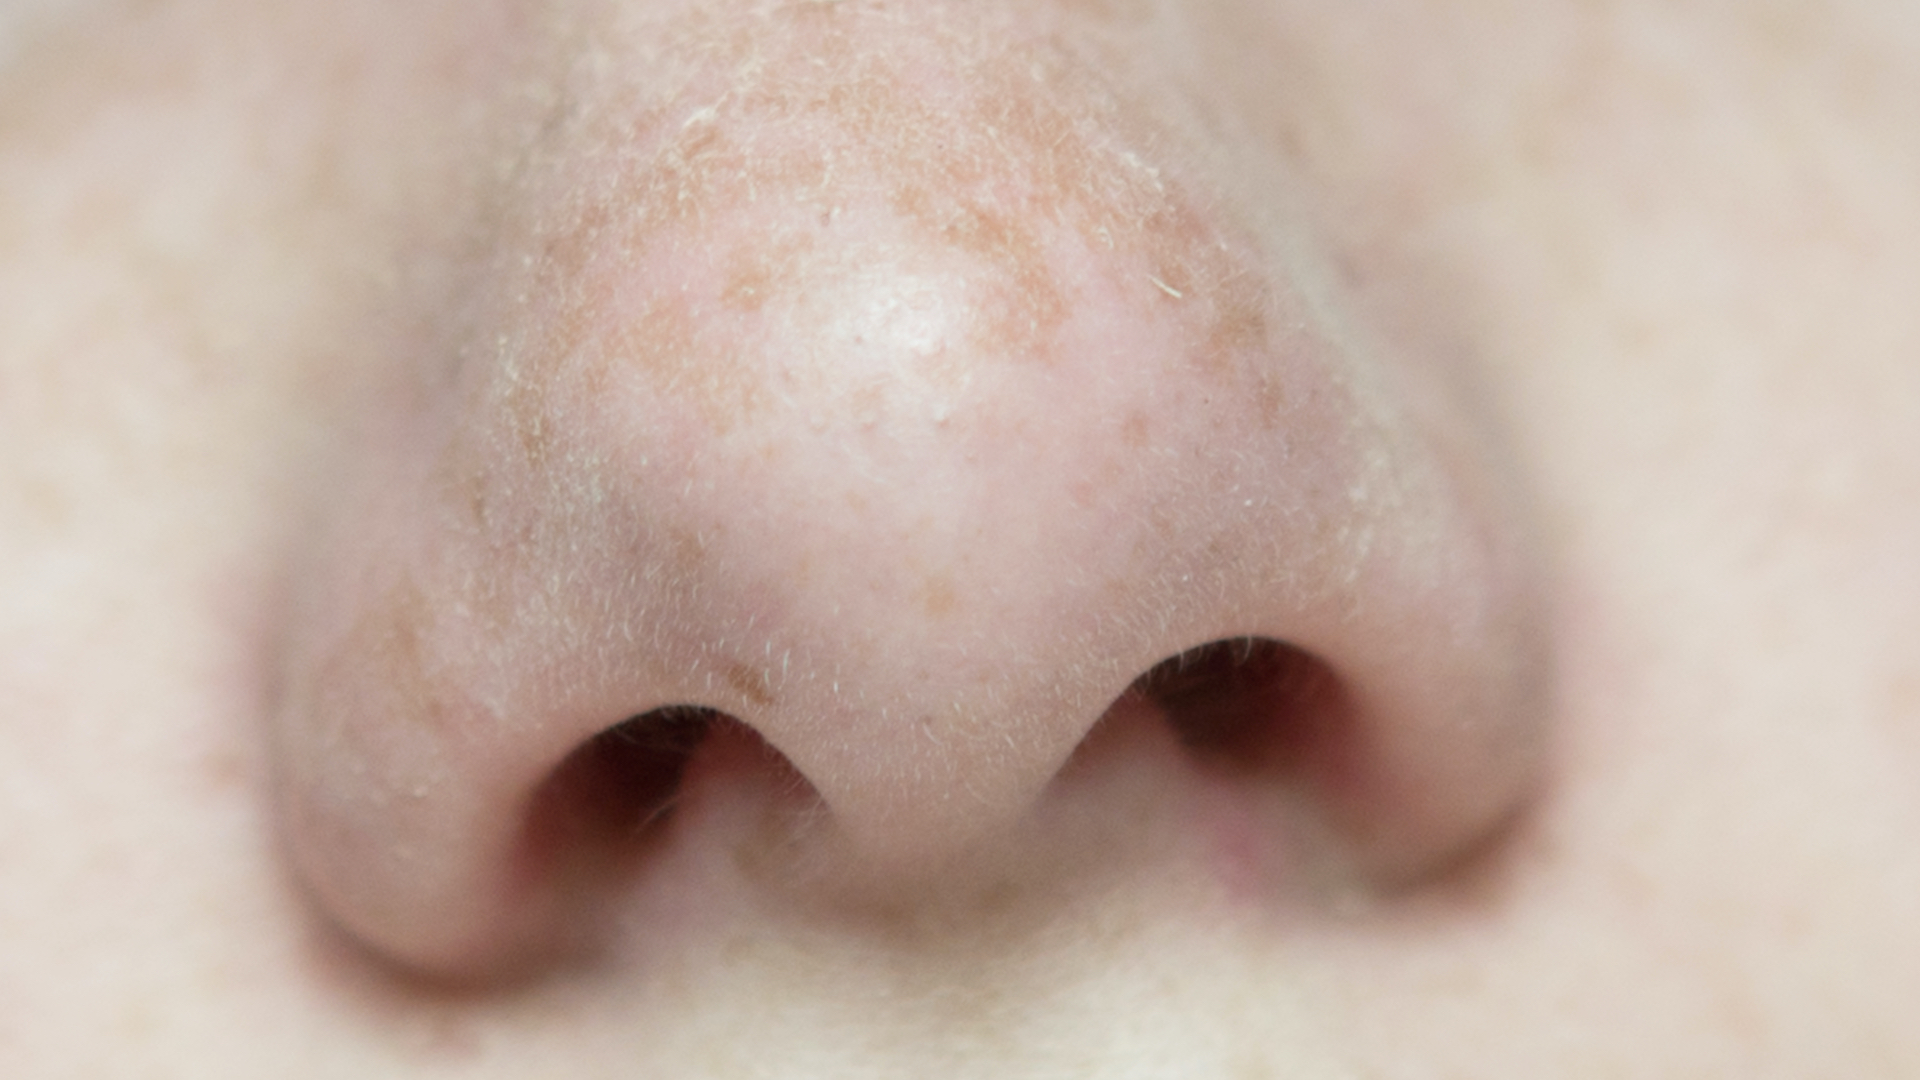 A nose